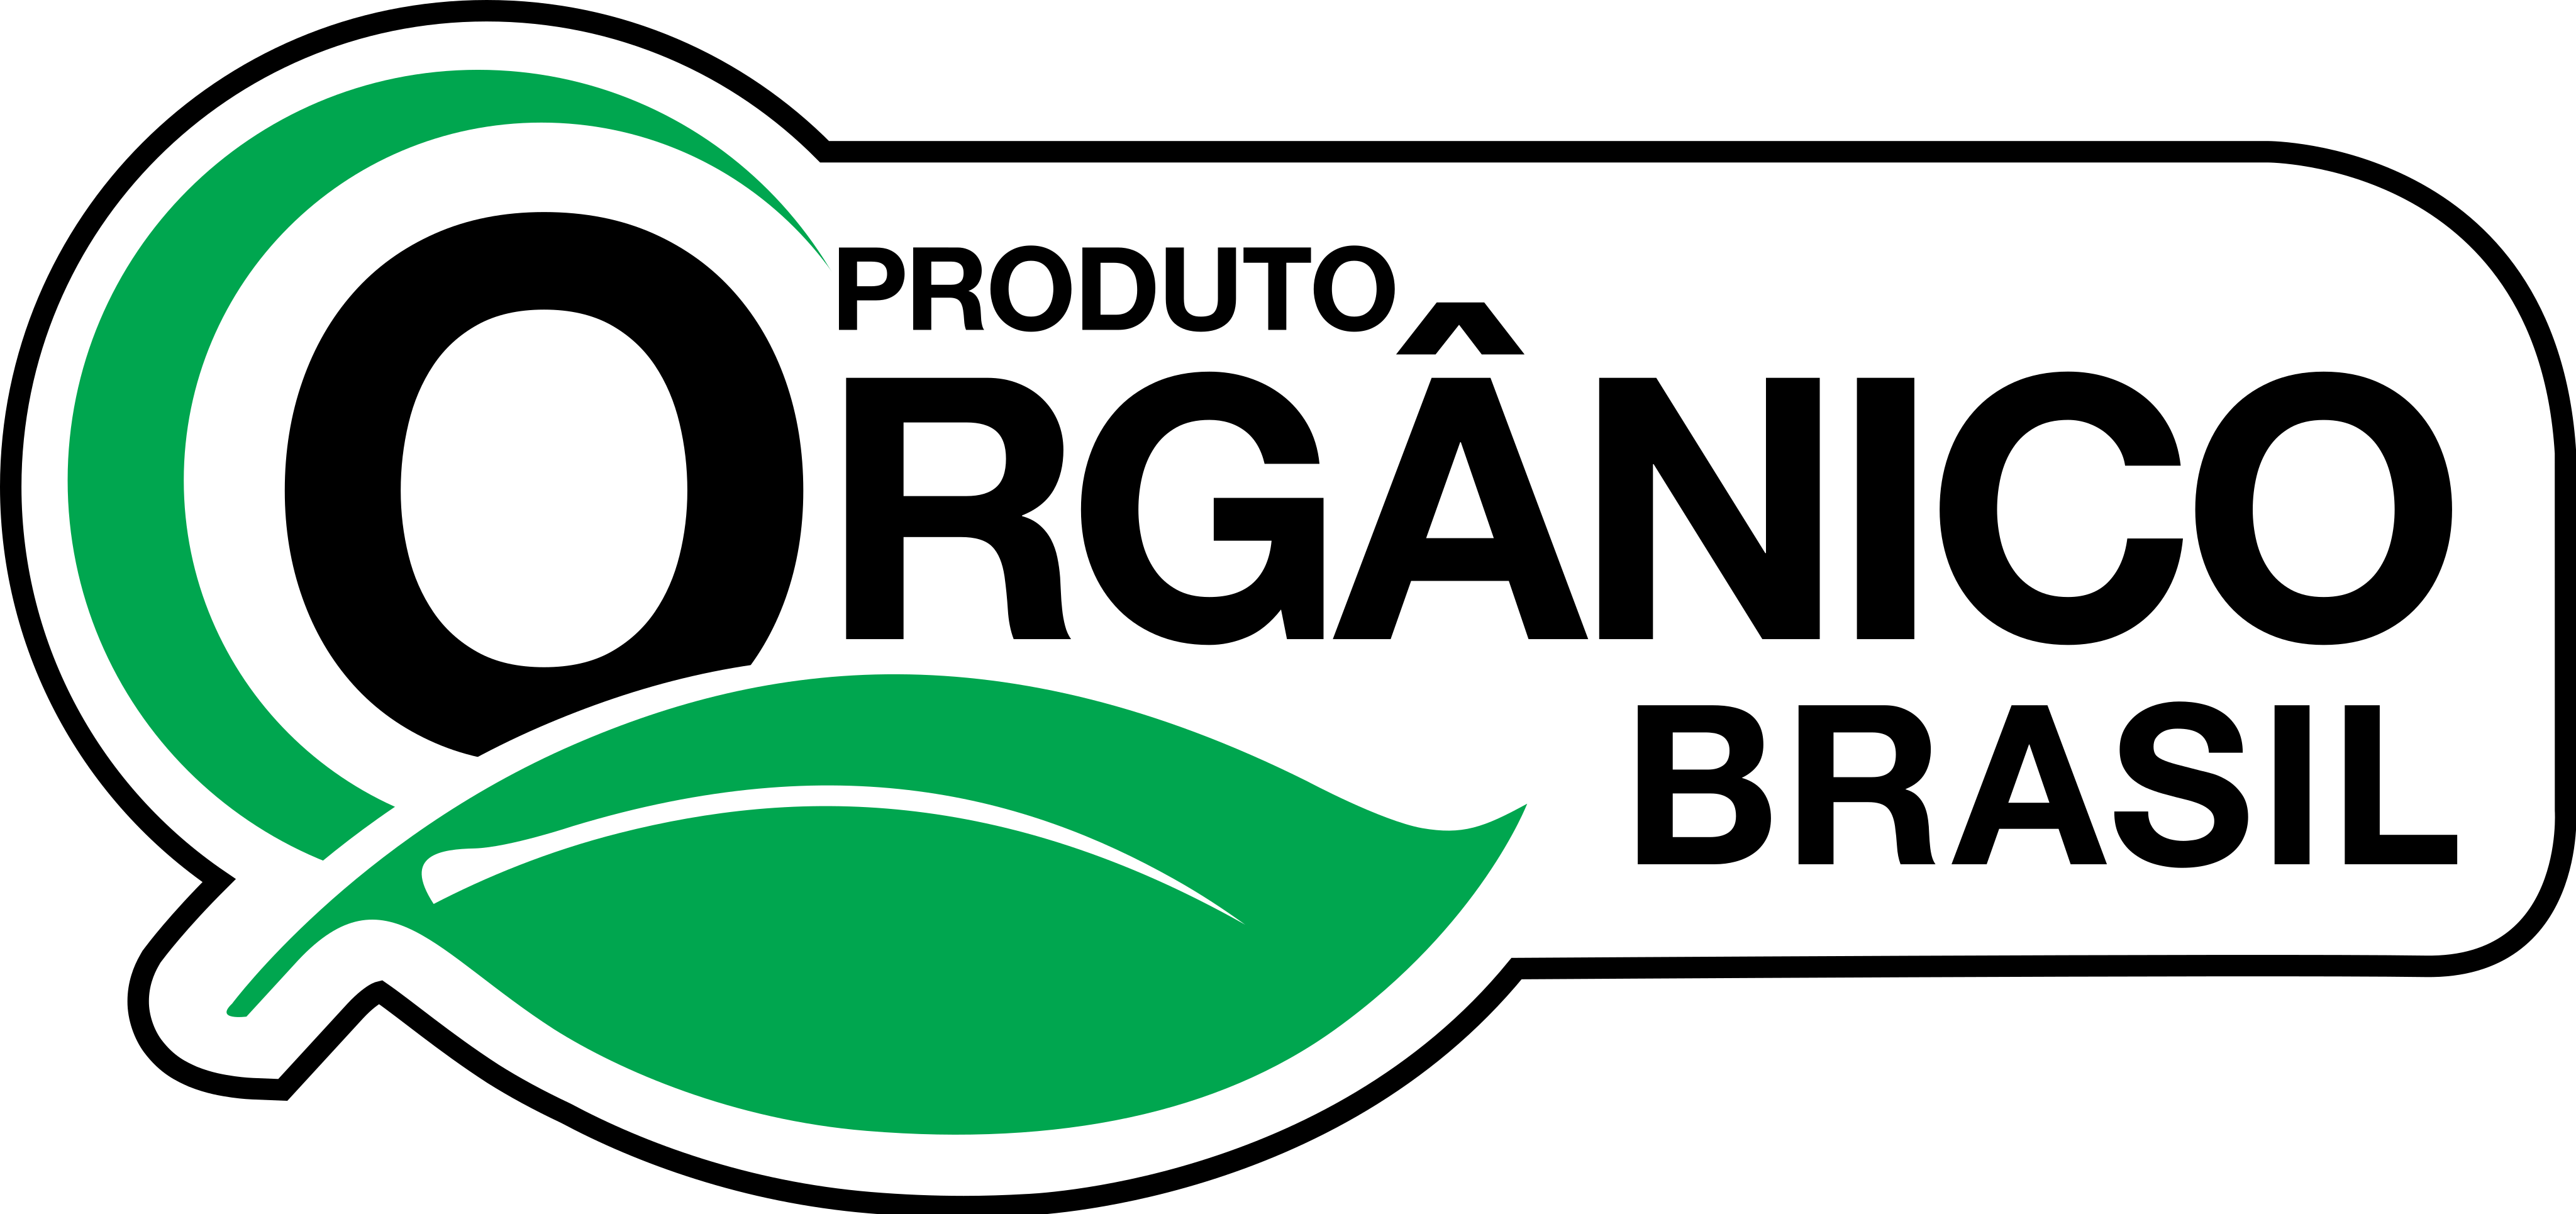 produto organico brasil logo 1 - Produto Orgânico Brasil Logo